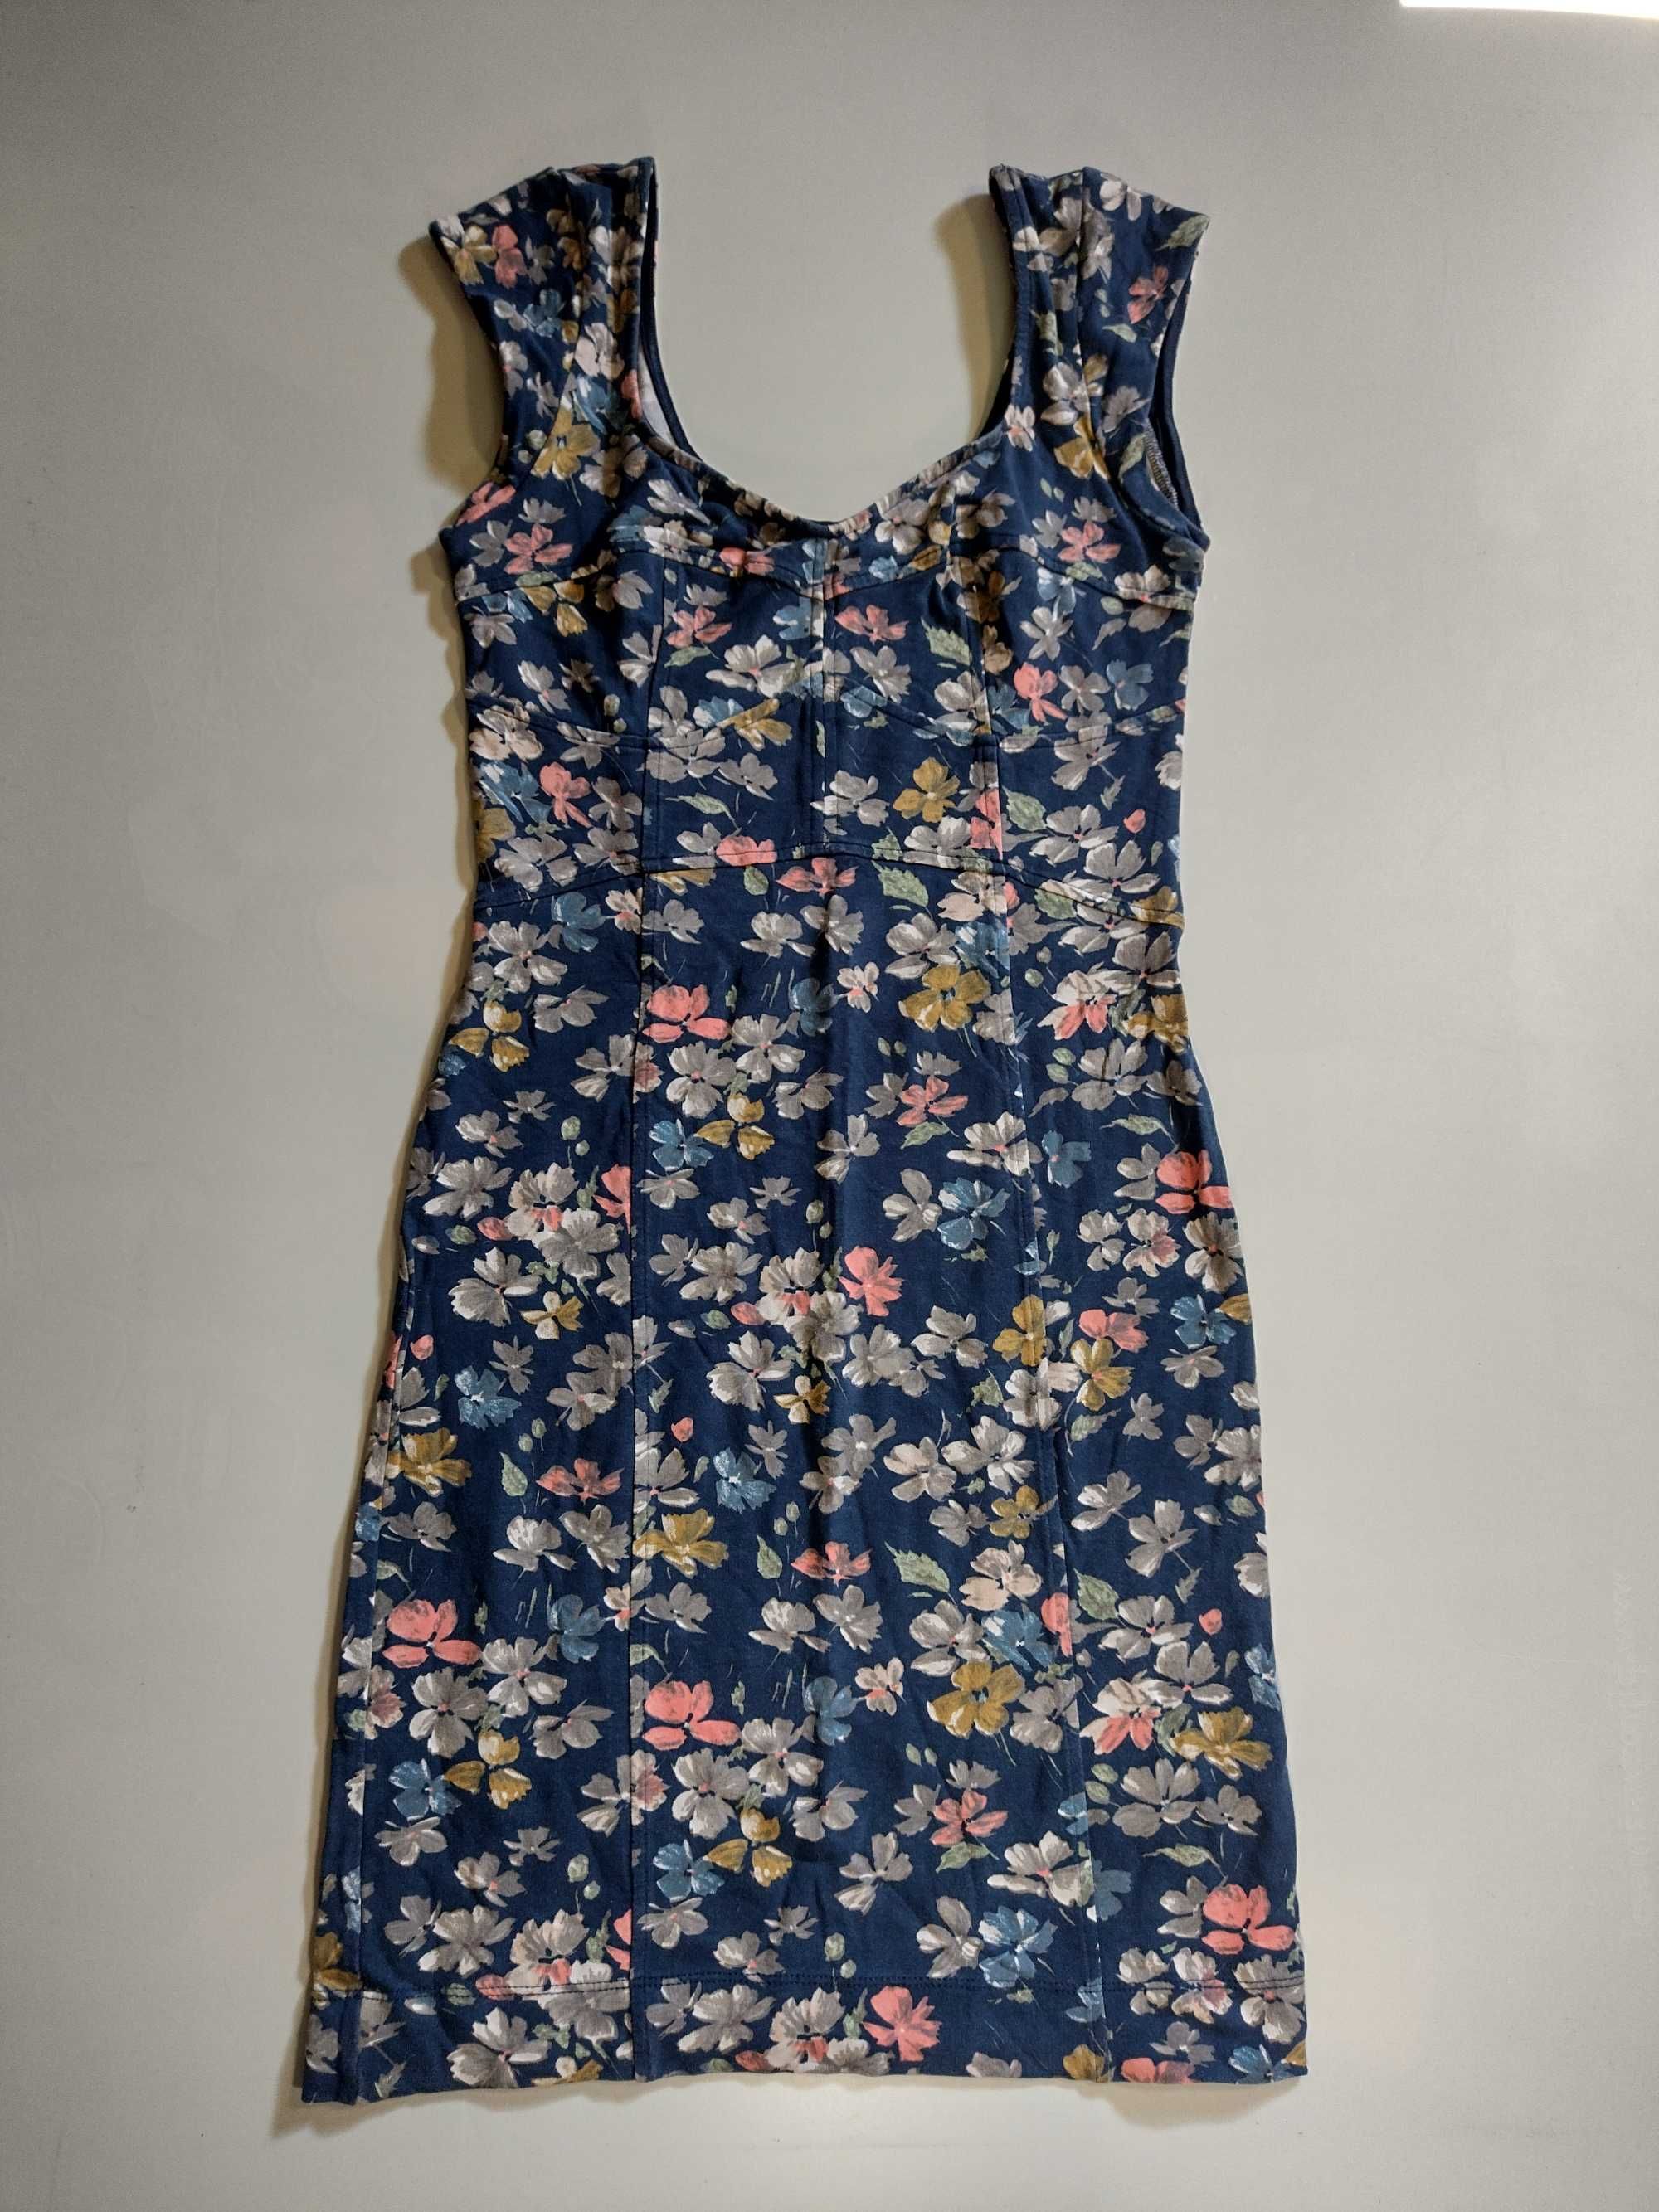 zestaw damski 36/38 S żakiecik. spódnica, sukienka + sandłki